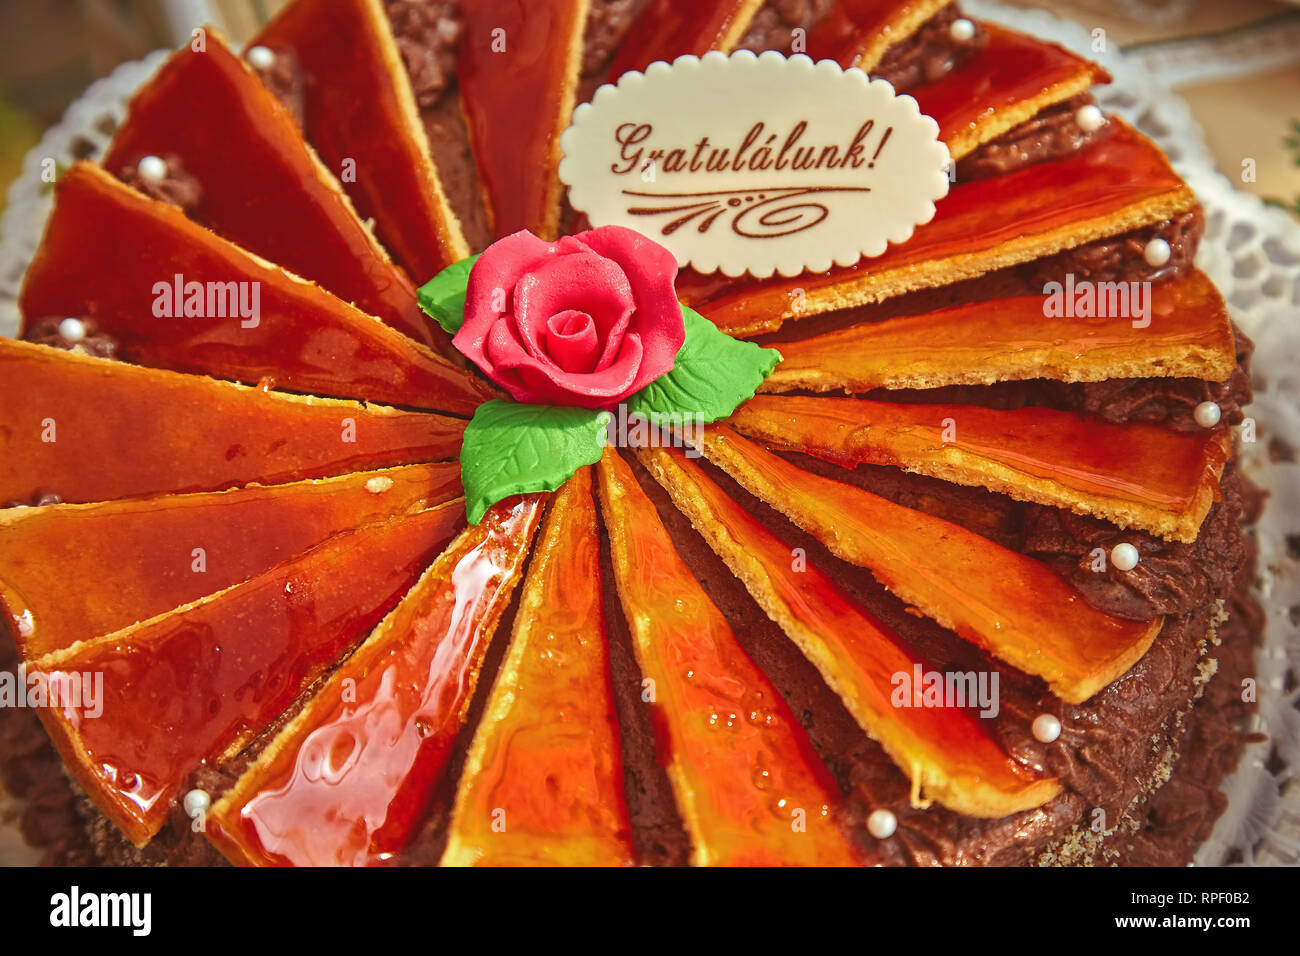 Molto bello fragile dolce torta sul tavolo Foto Stock